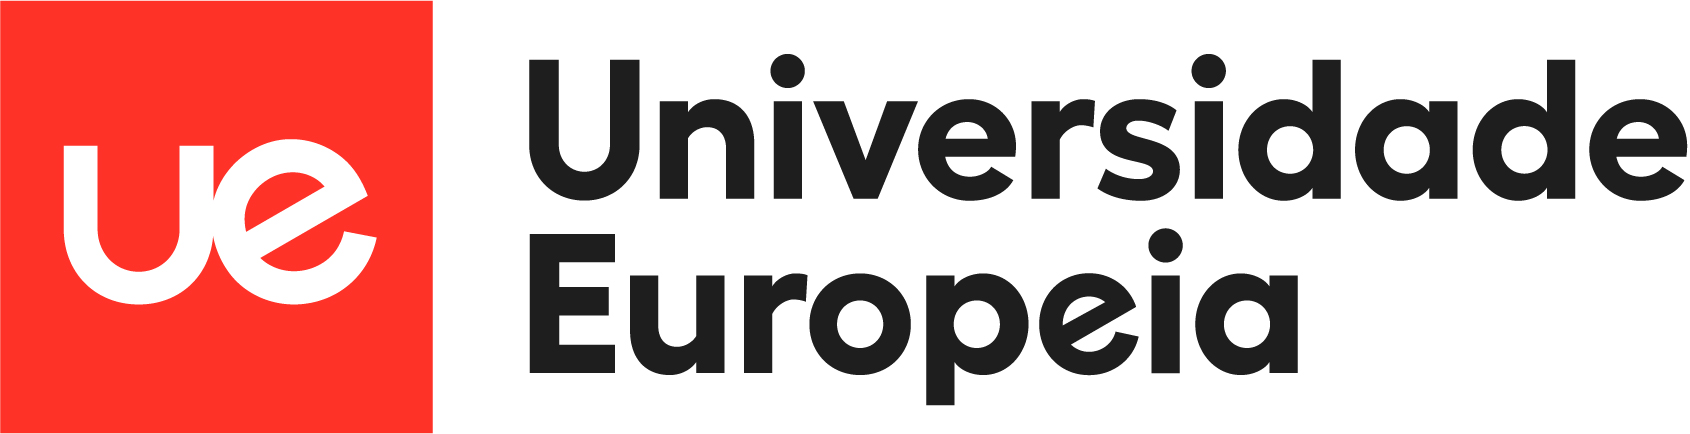 UE_Europeia_Logo (2)